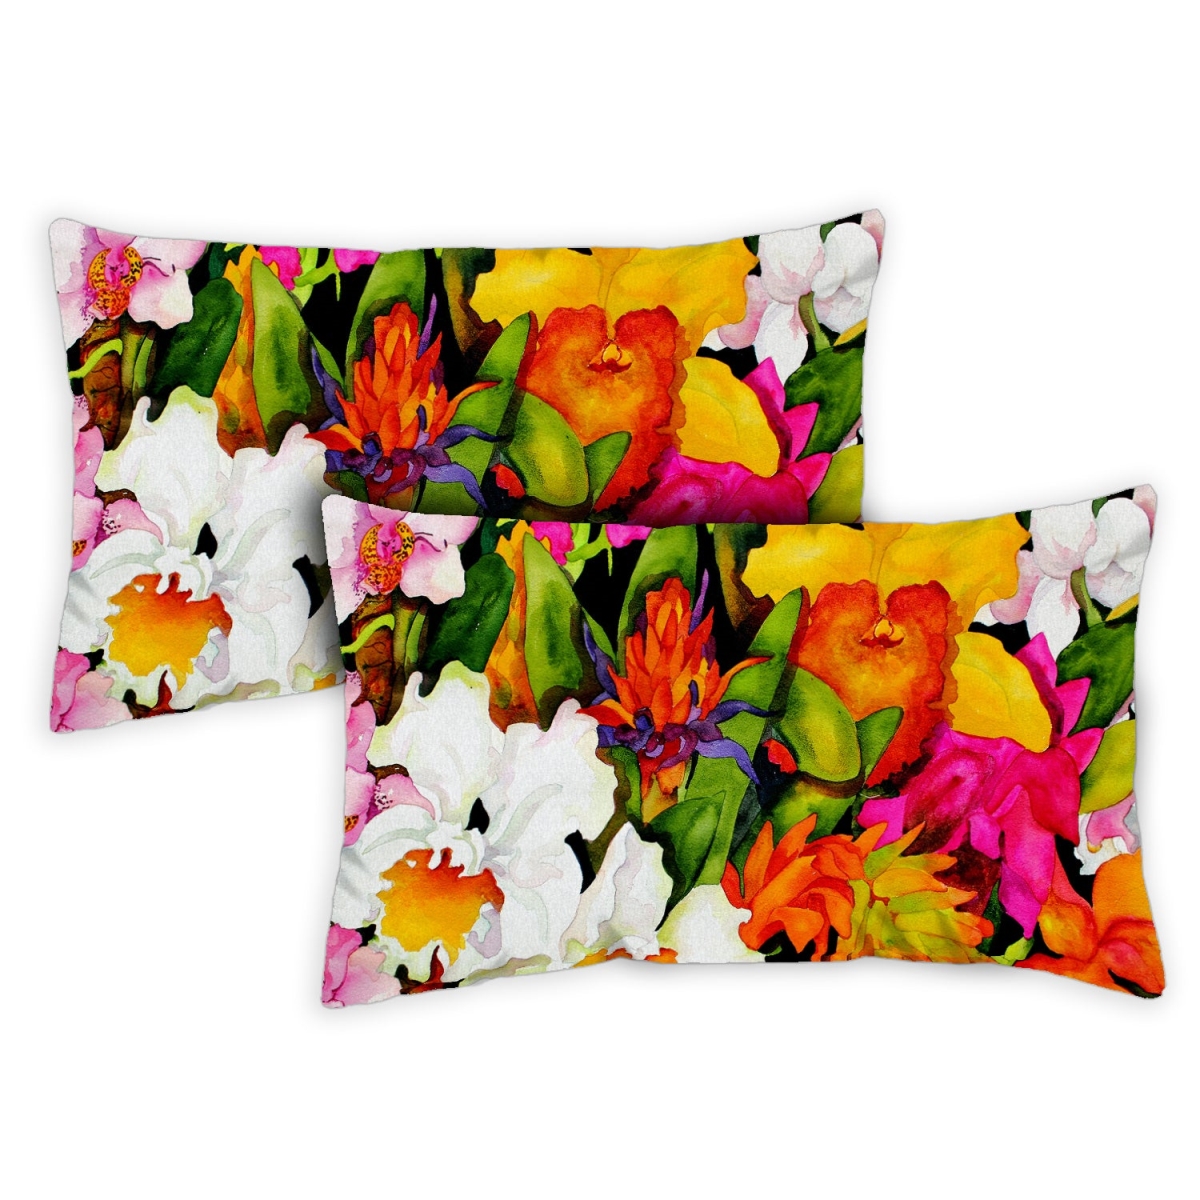 Toland Home Garden 771240 12 x 19 in. Exotic Flowers Indoor & Outdoor Pillow Case - Set of 2